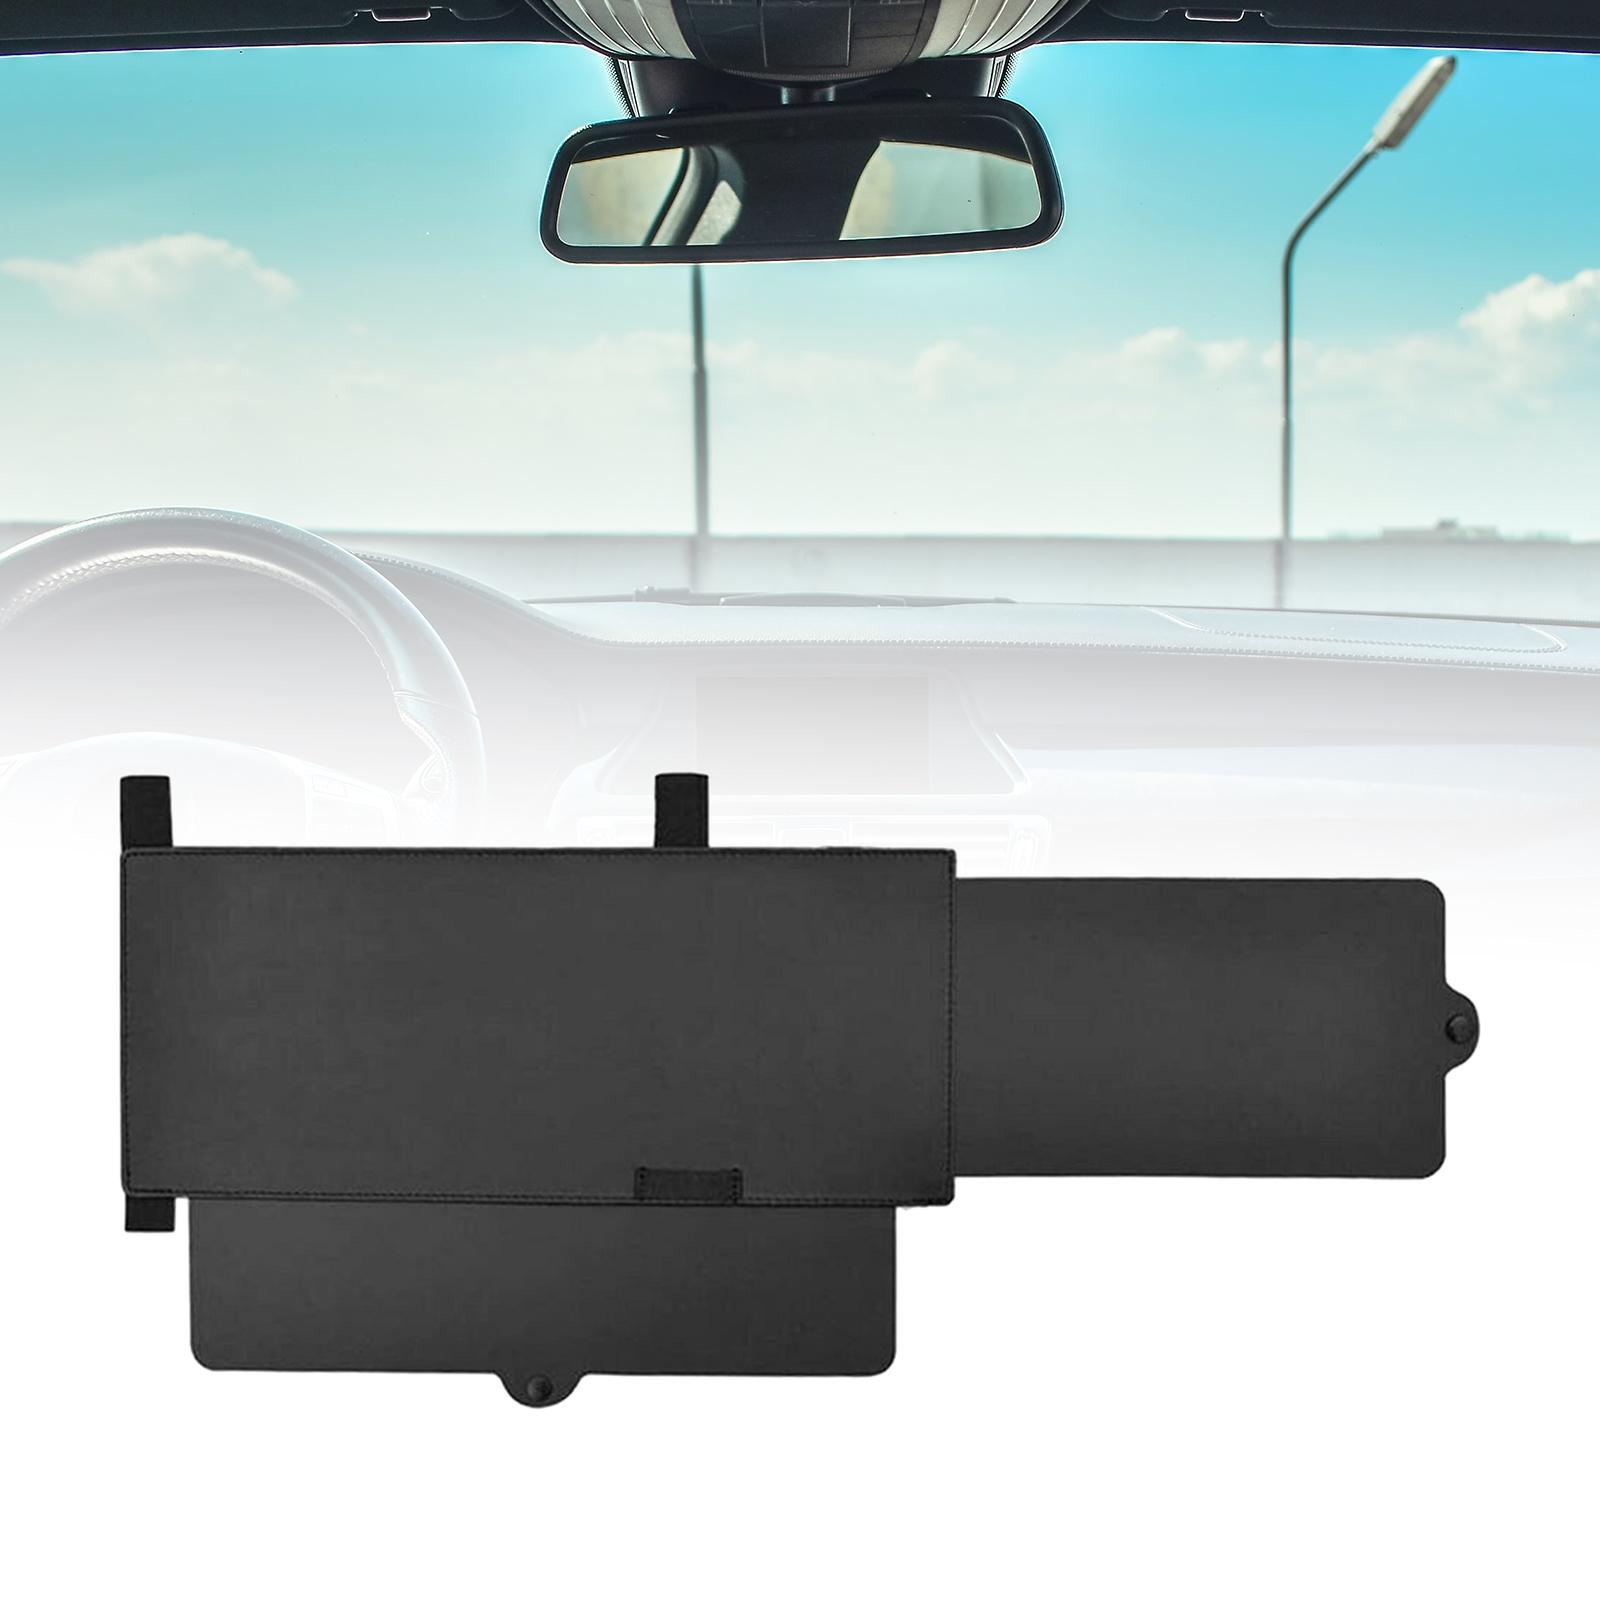 Sun Visor Extender Portable Windshield Sun Protection Visor for Vehicle